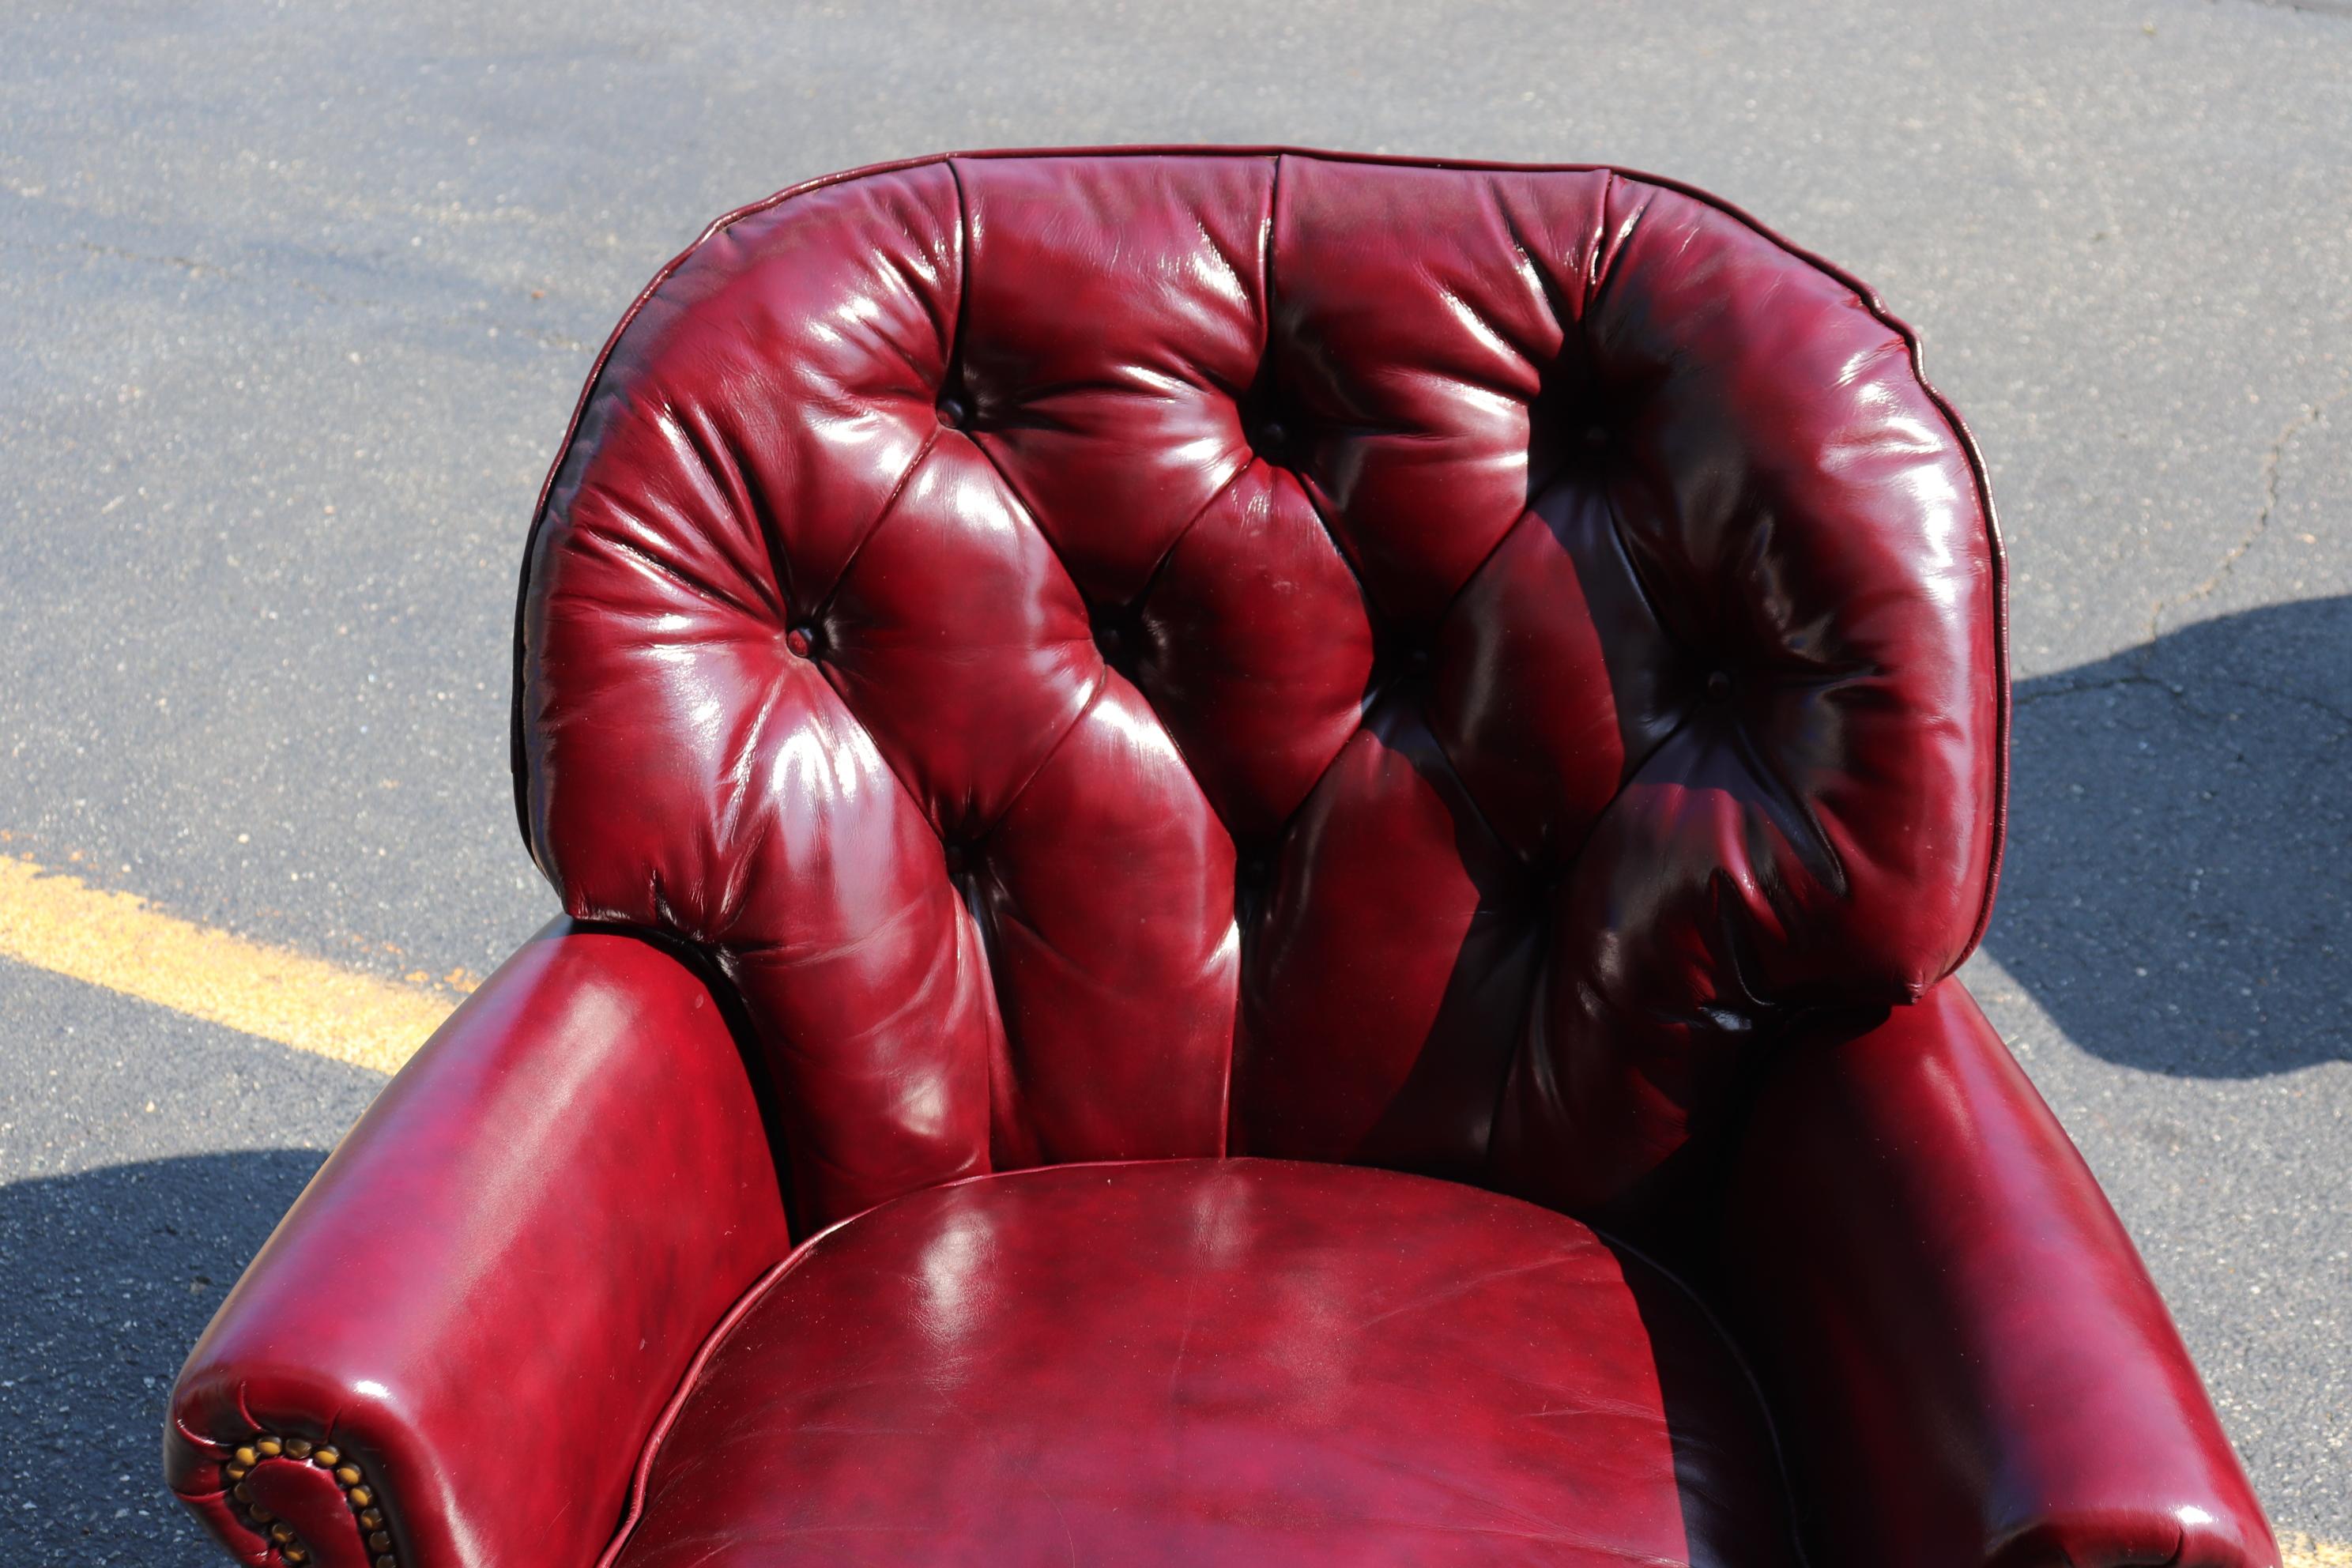 burgundy leather club chair